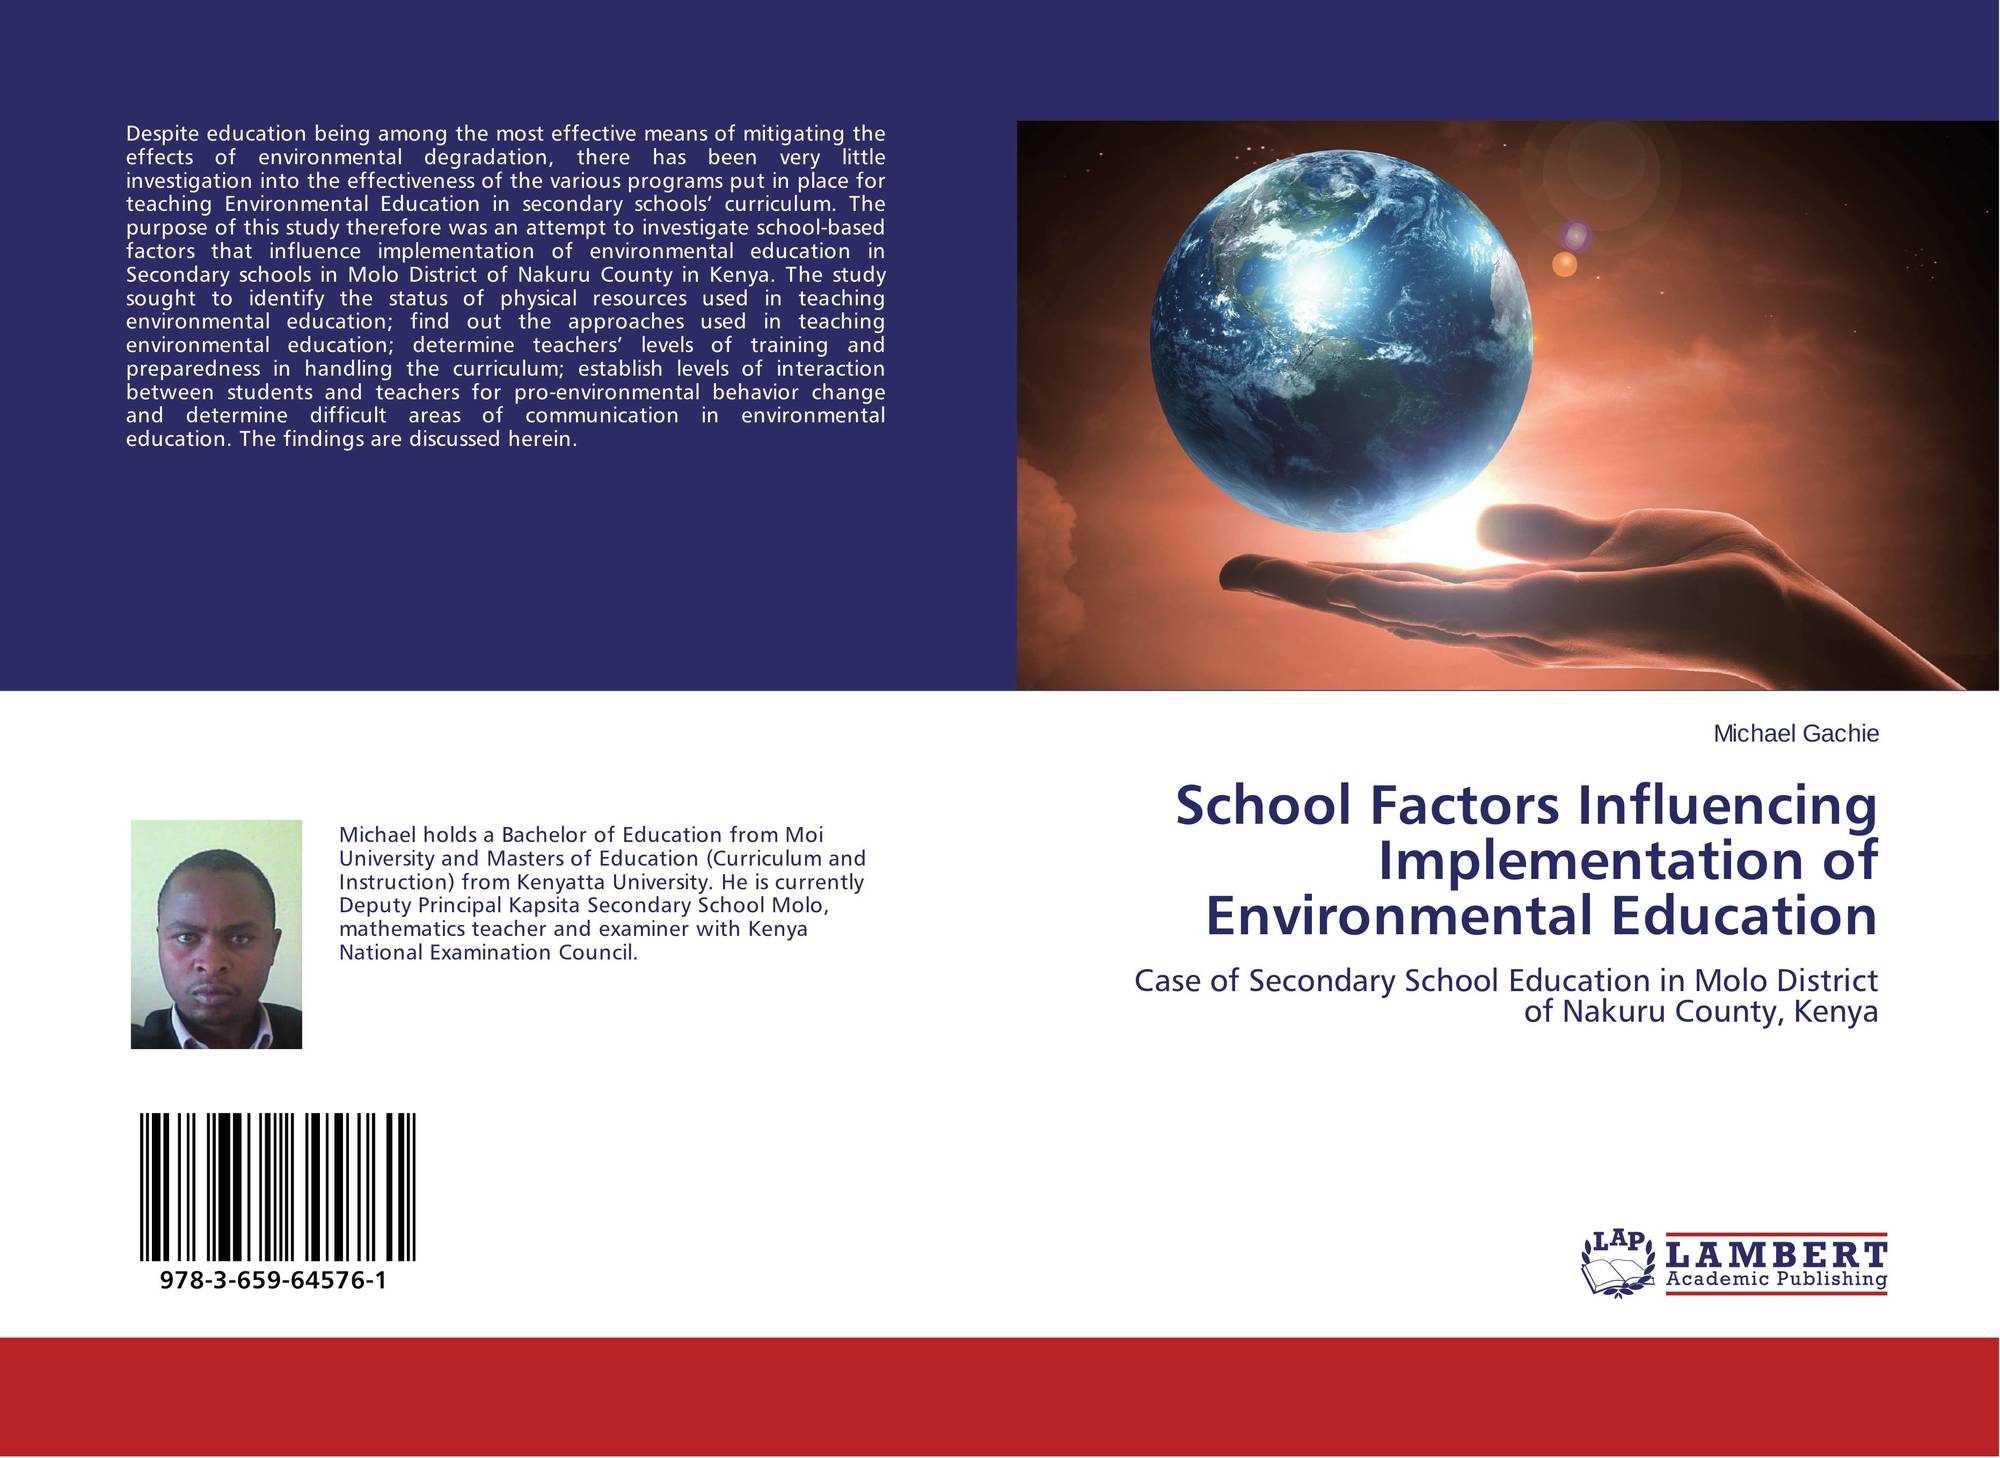 Environmental contextual factors in a school